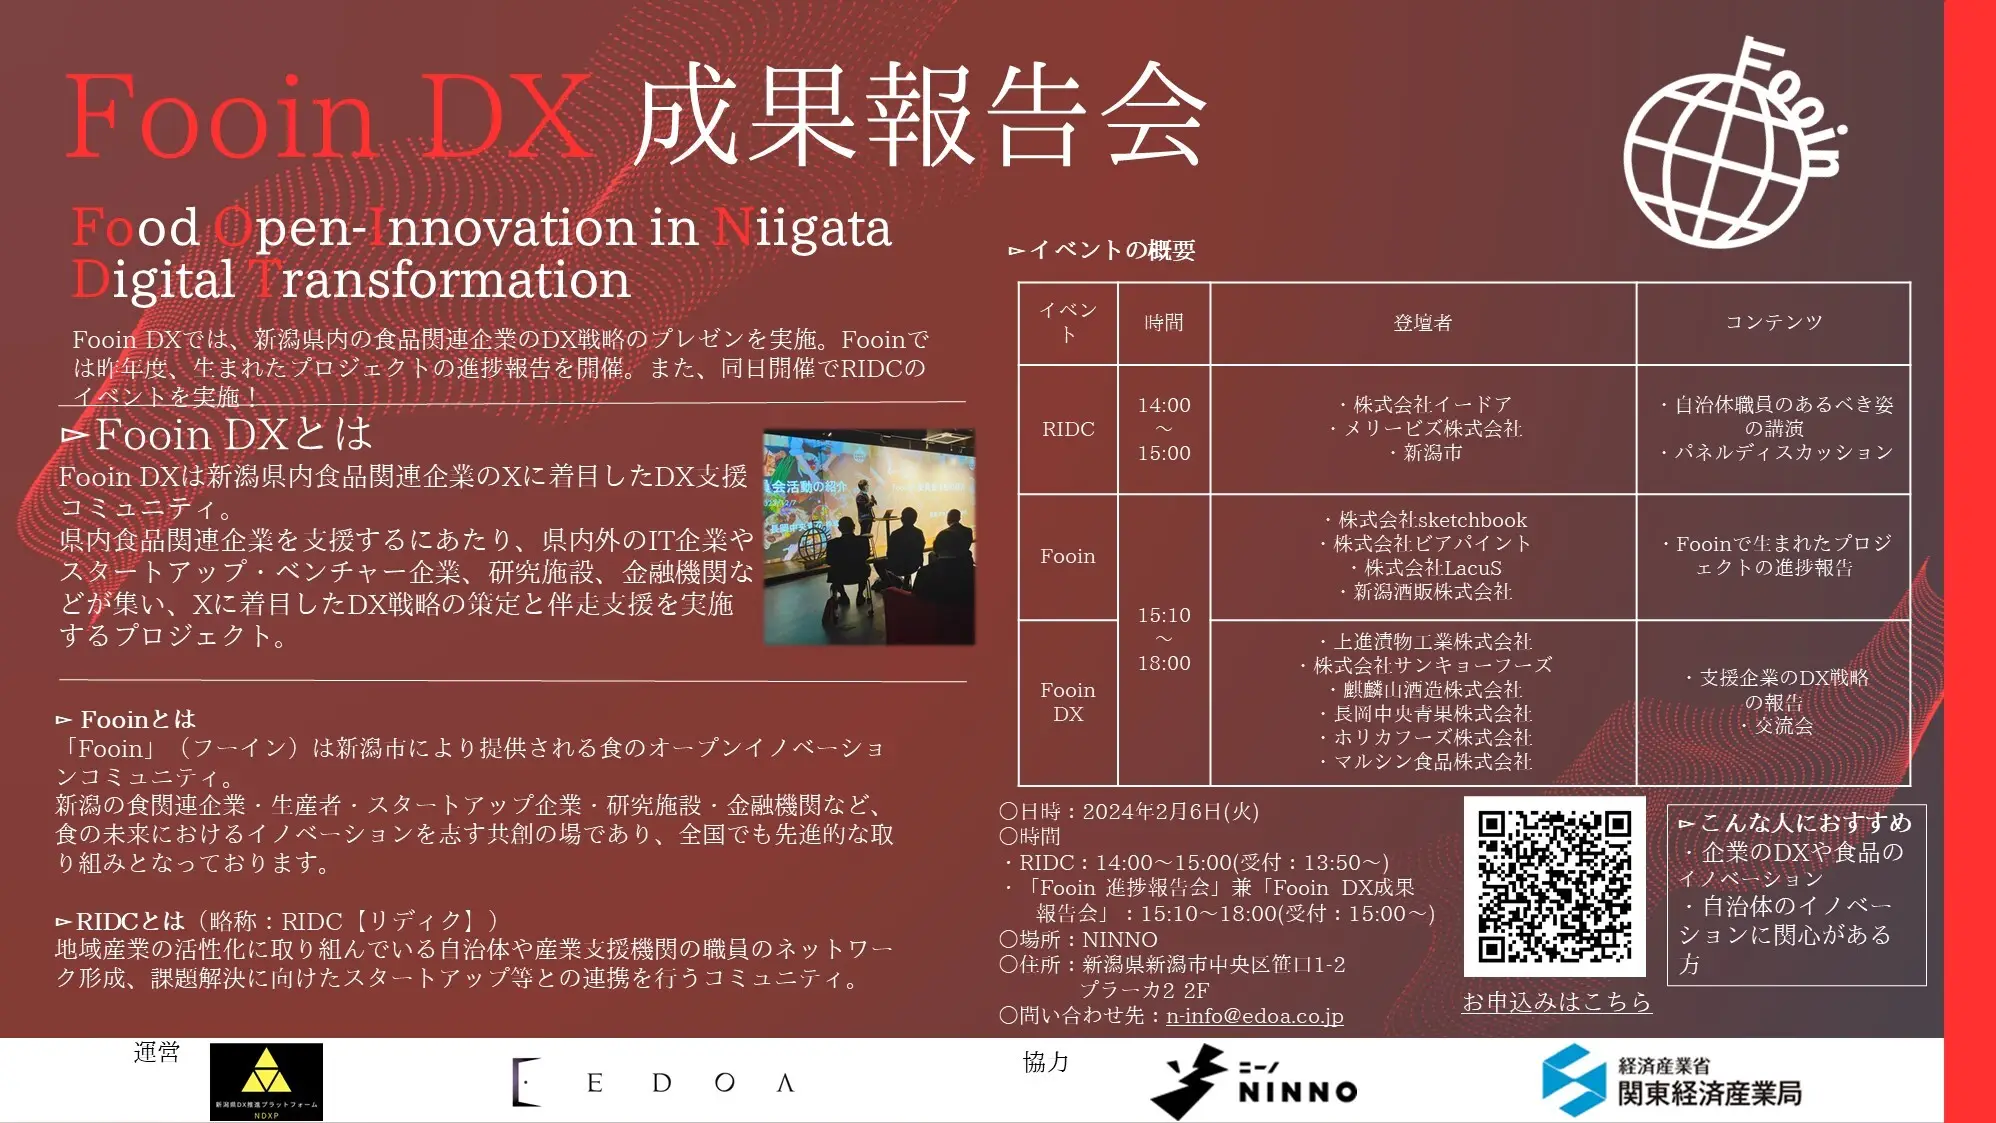 新潟県内食品業界特化の本質的なDX推進プログラム「Fooin DX成果報告会」を開催します